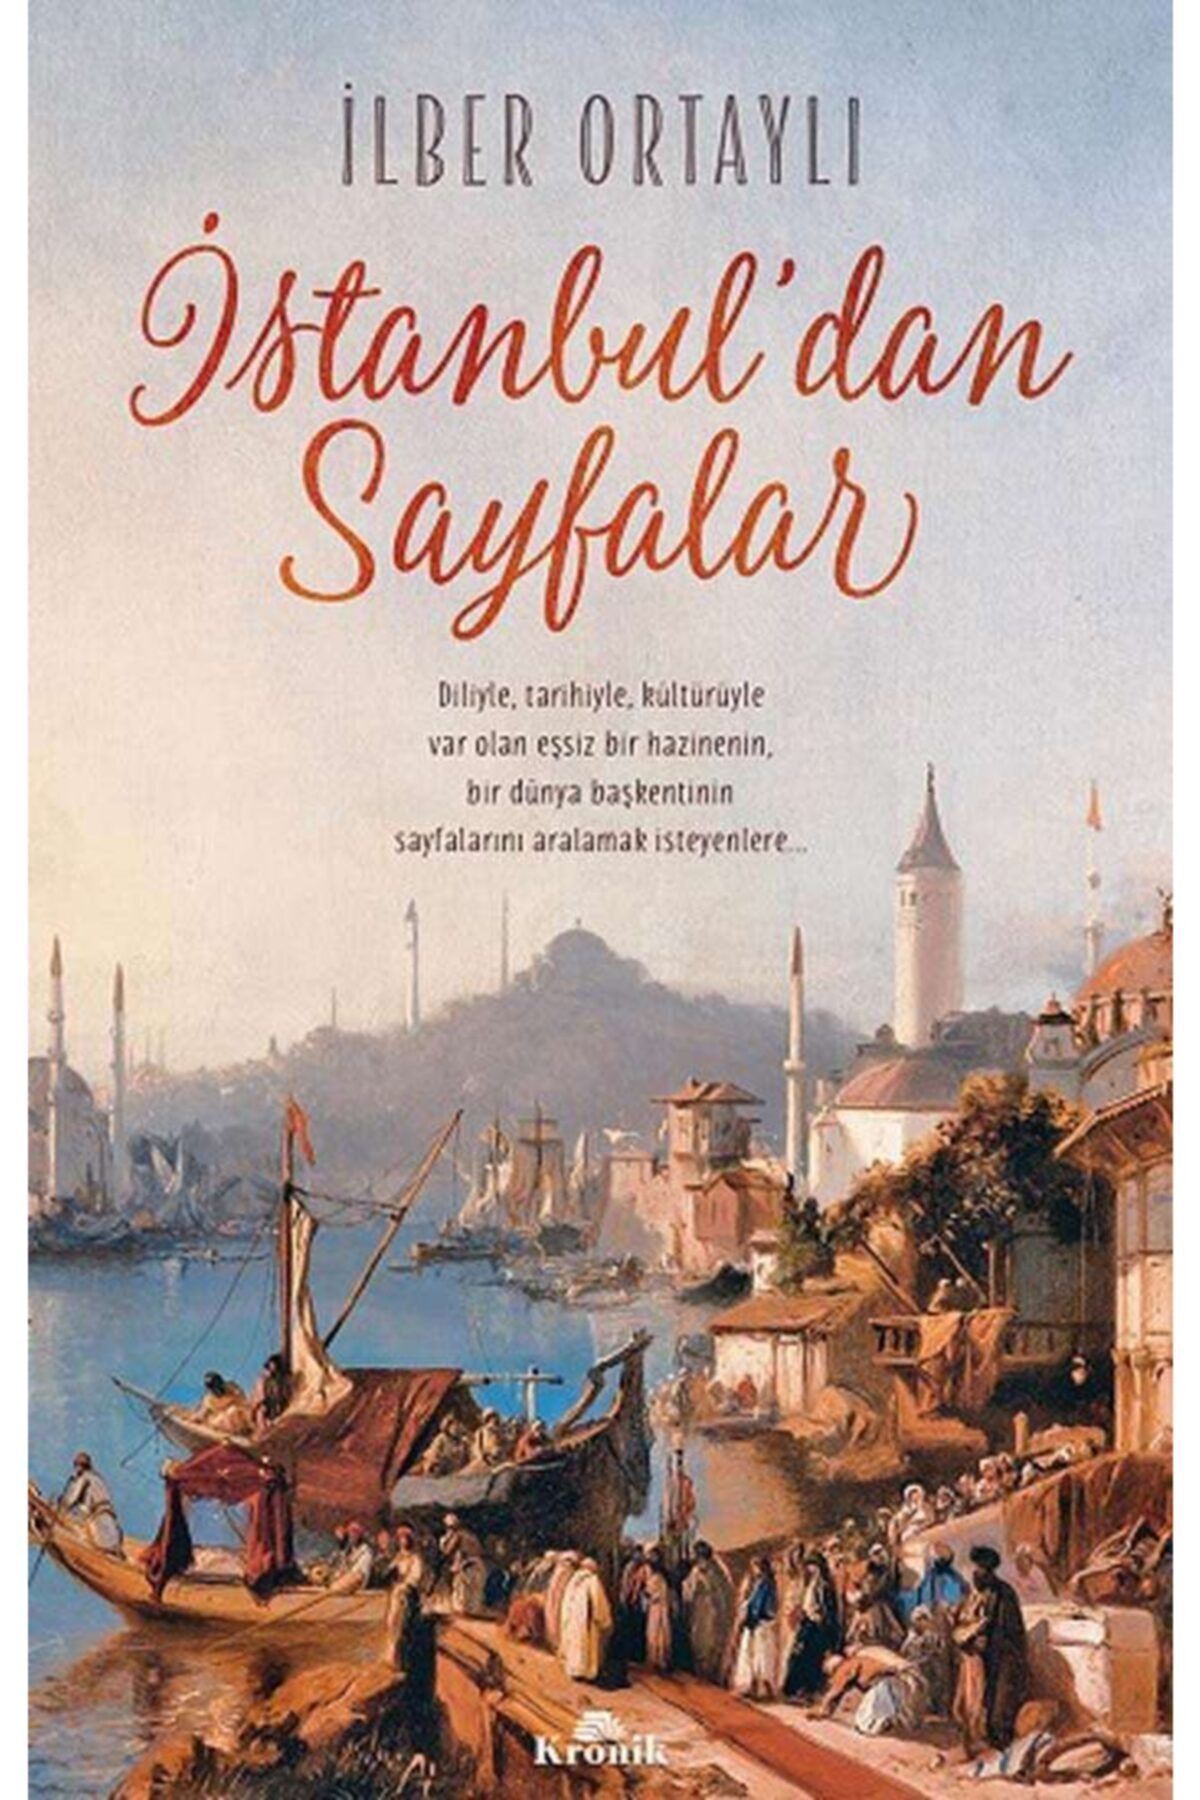 Kronik Kitap Istanbul’dan Sayfalar